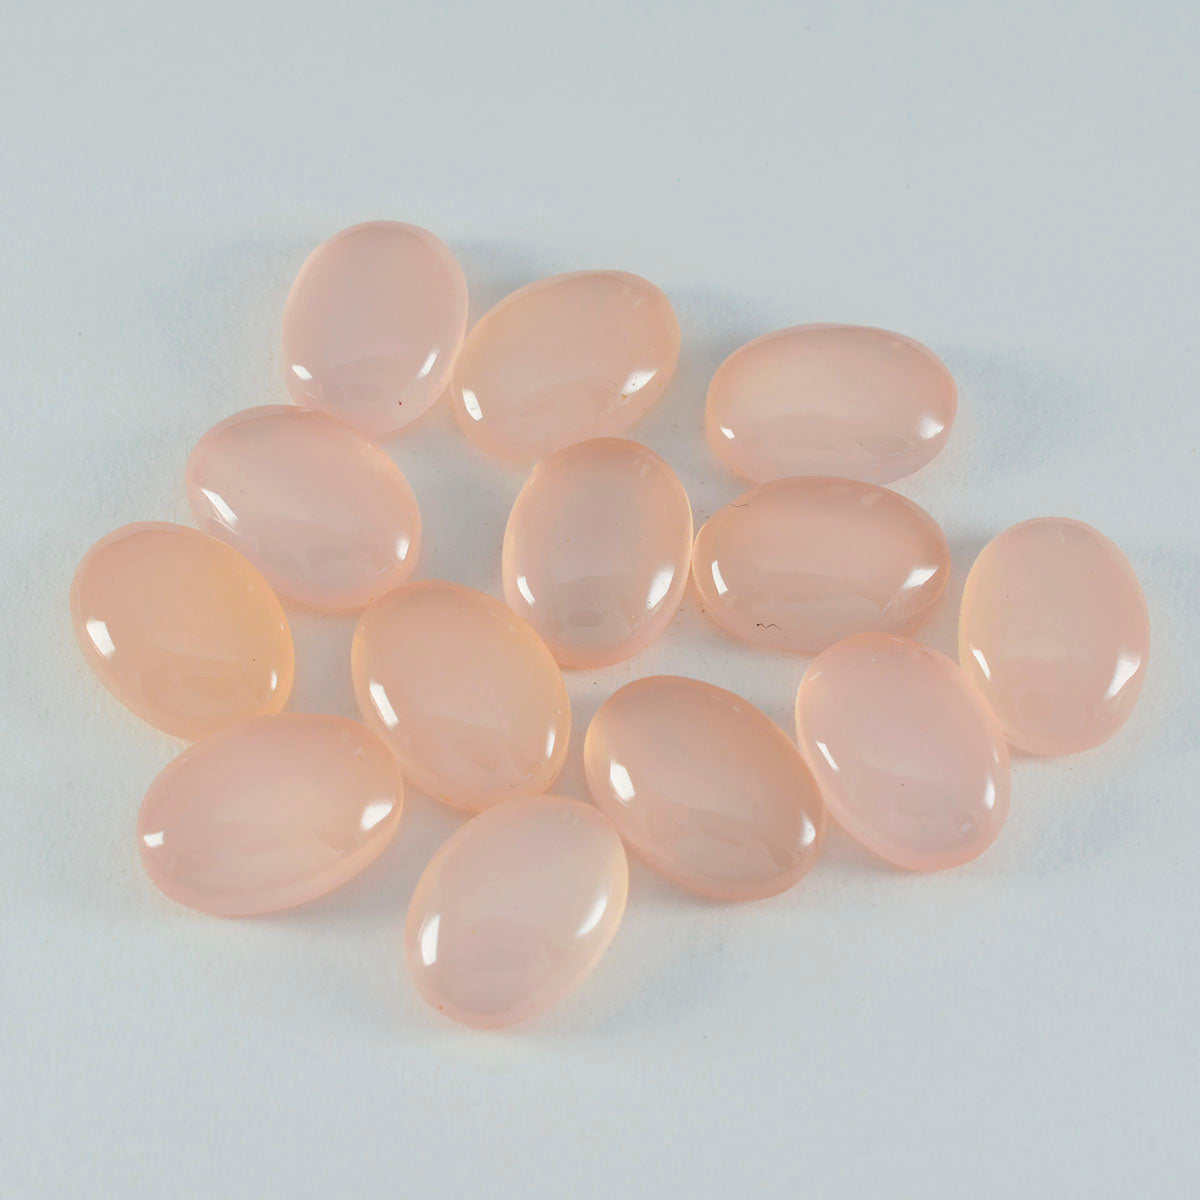 Riyogems 1pc cabochon de quartz rose rose 8x10mm forme ovale grande qualité pierre en vrac